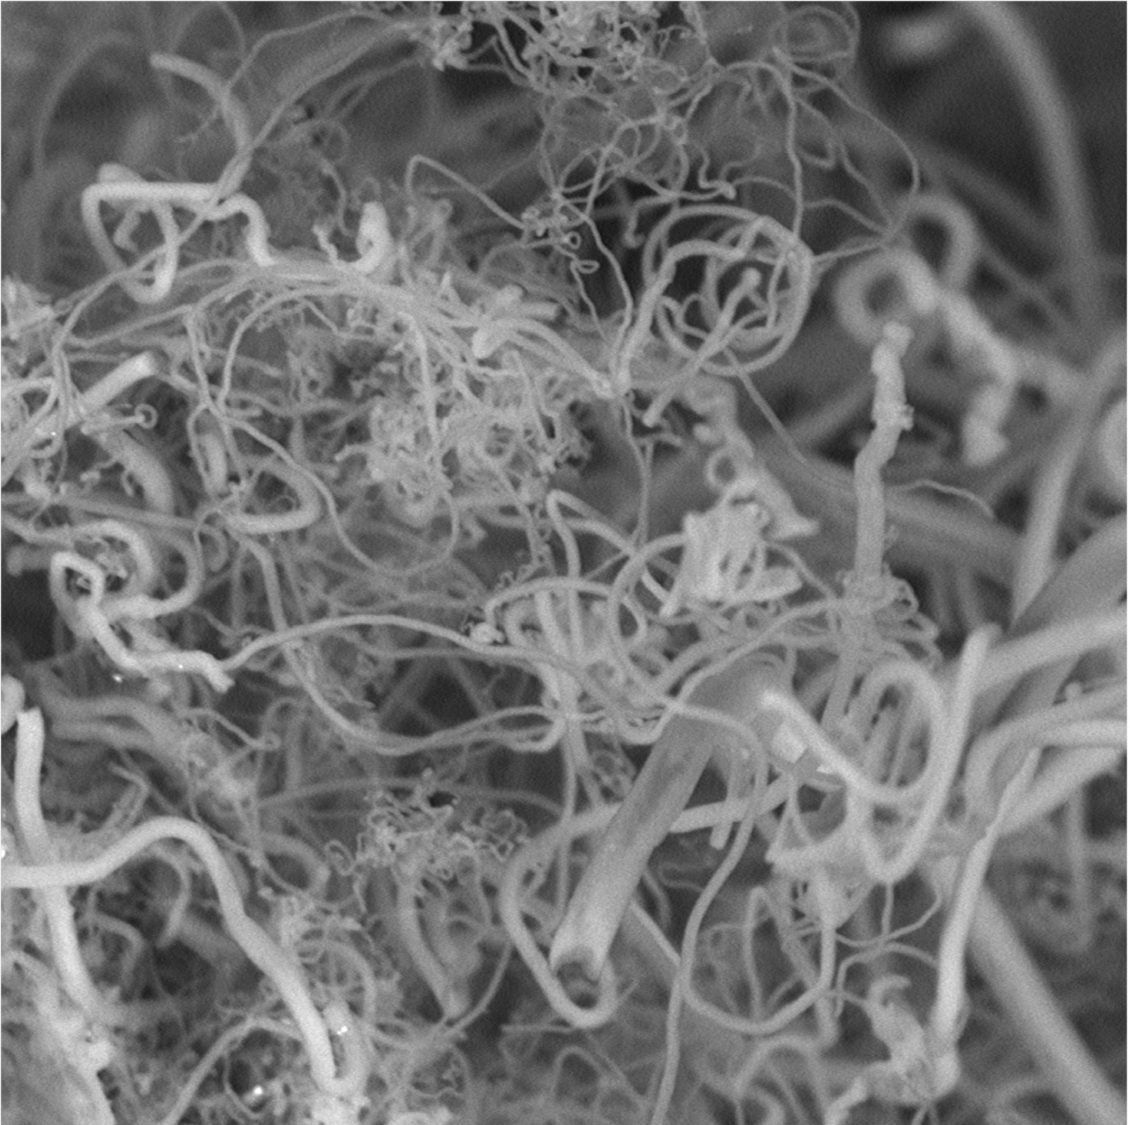 Nanofibra de carbono creada a partir de CO2.